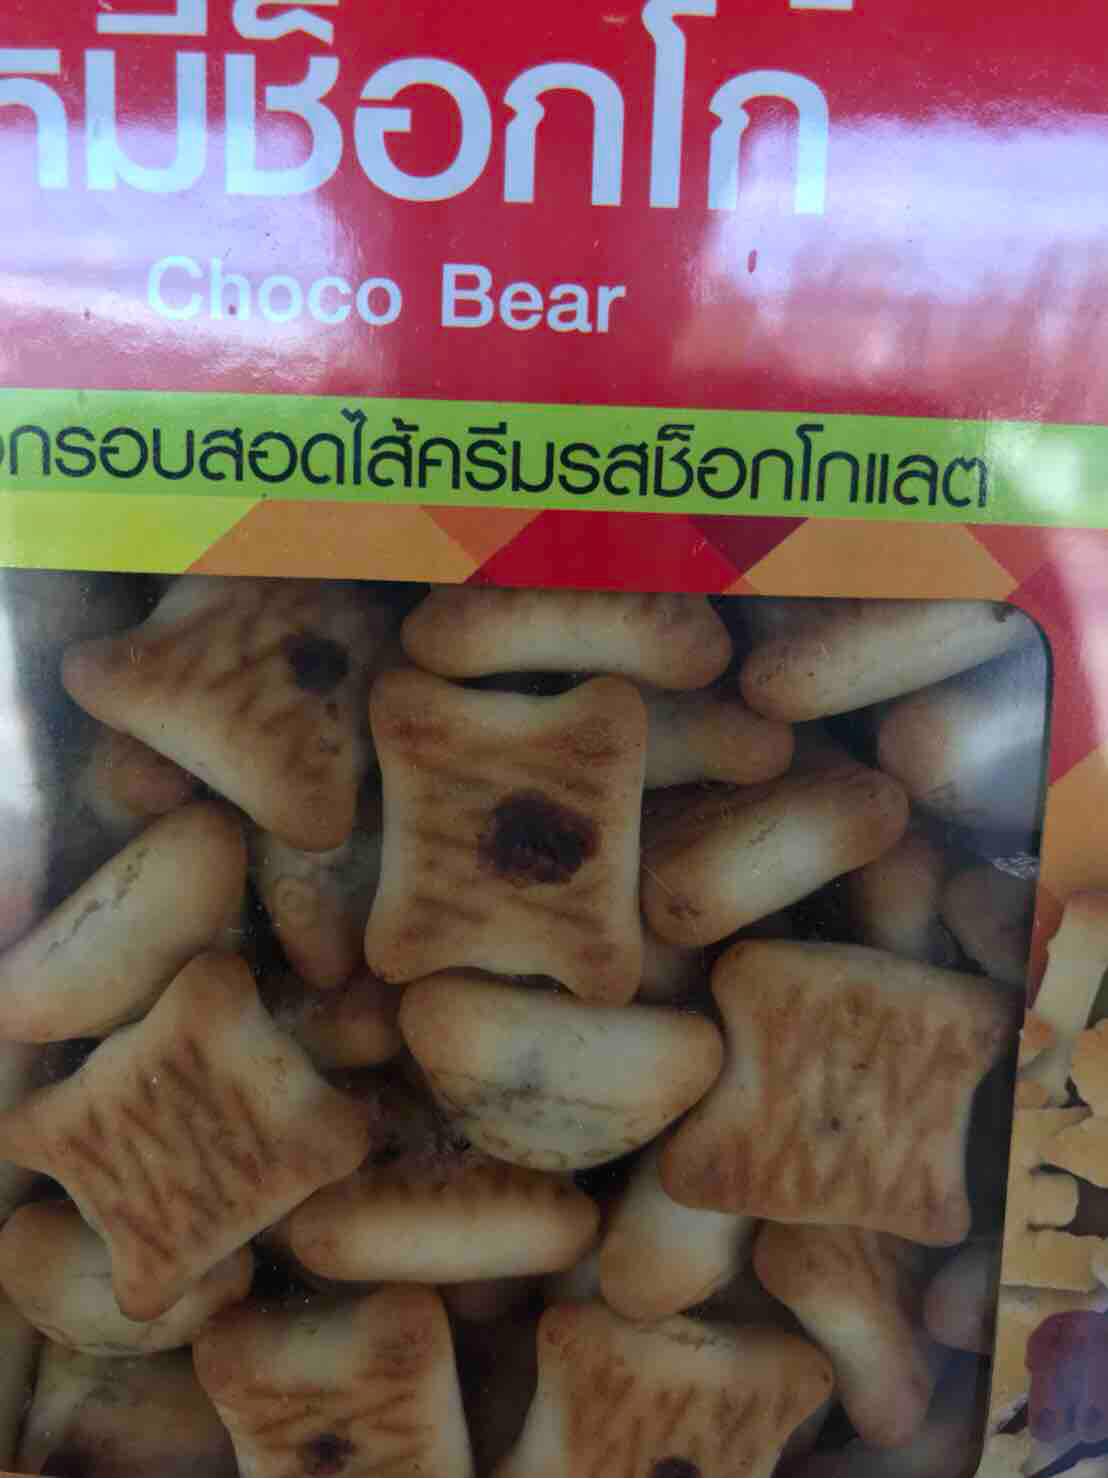 ขนมหมี ใส้ช็อคโกแลต ปิ๊ปเล็กหนัก1.2 กิโล